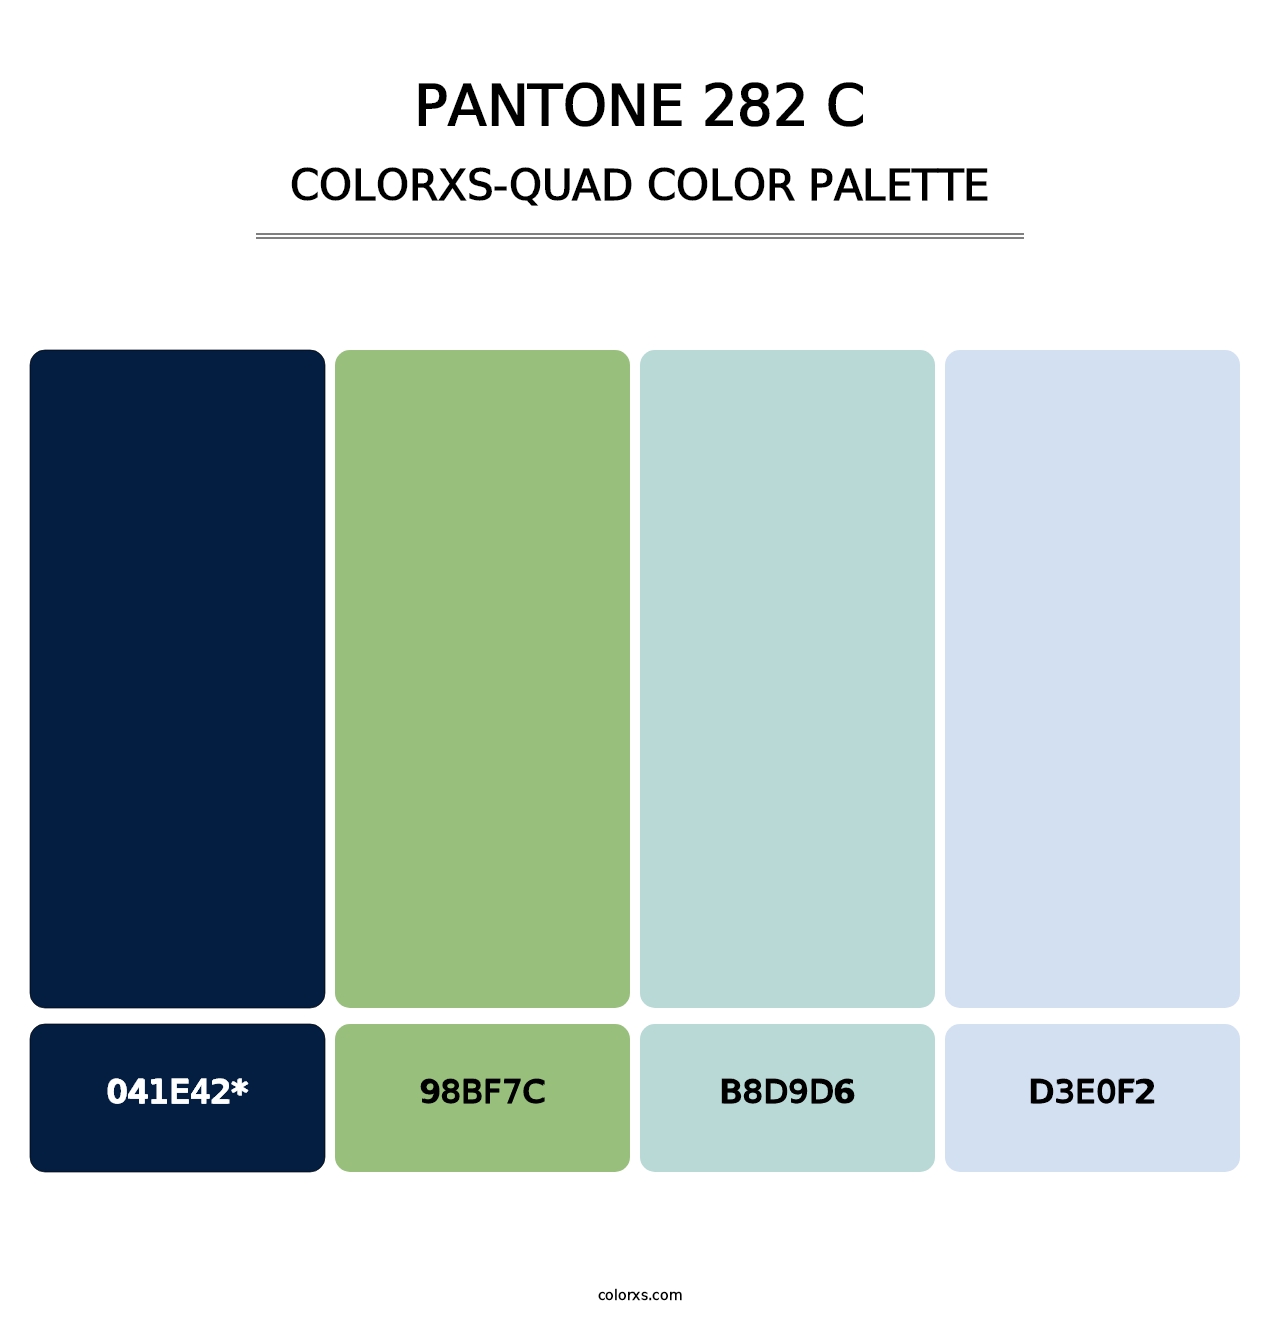 PANTONE 282 C - Colorxs Quad Palette